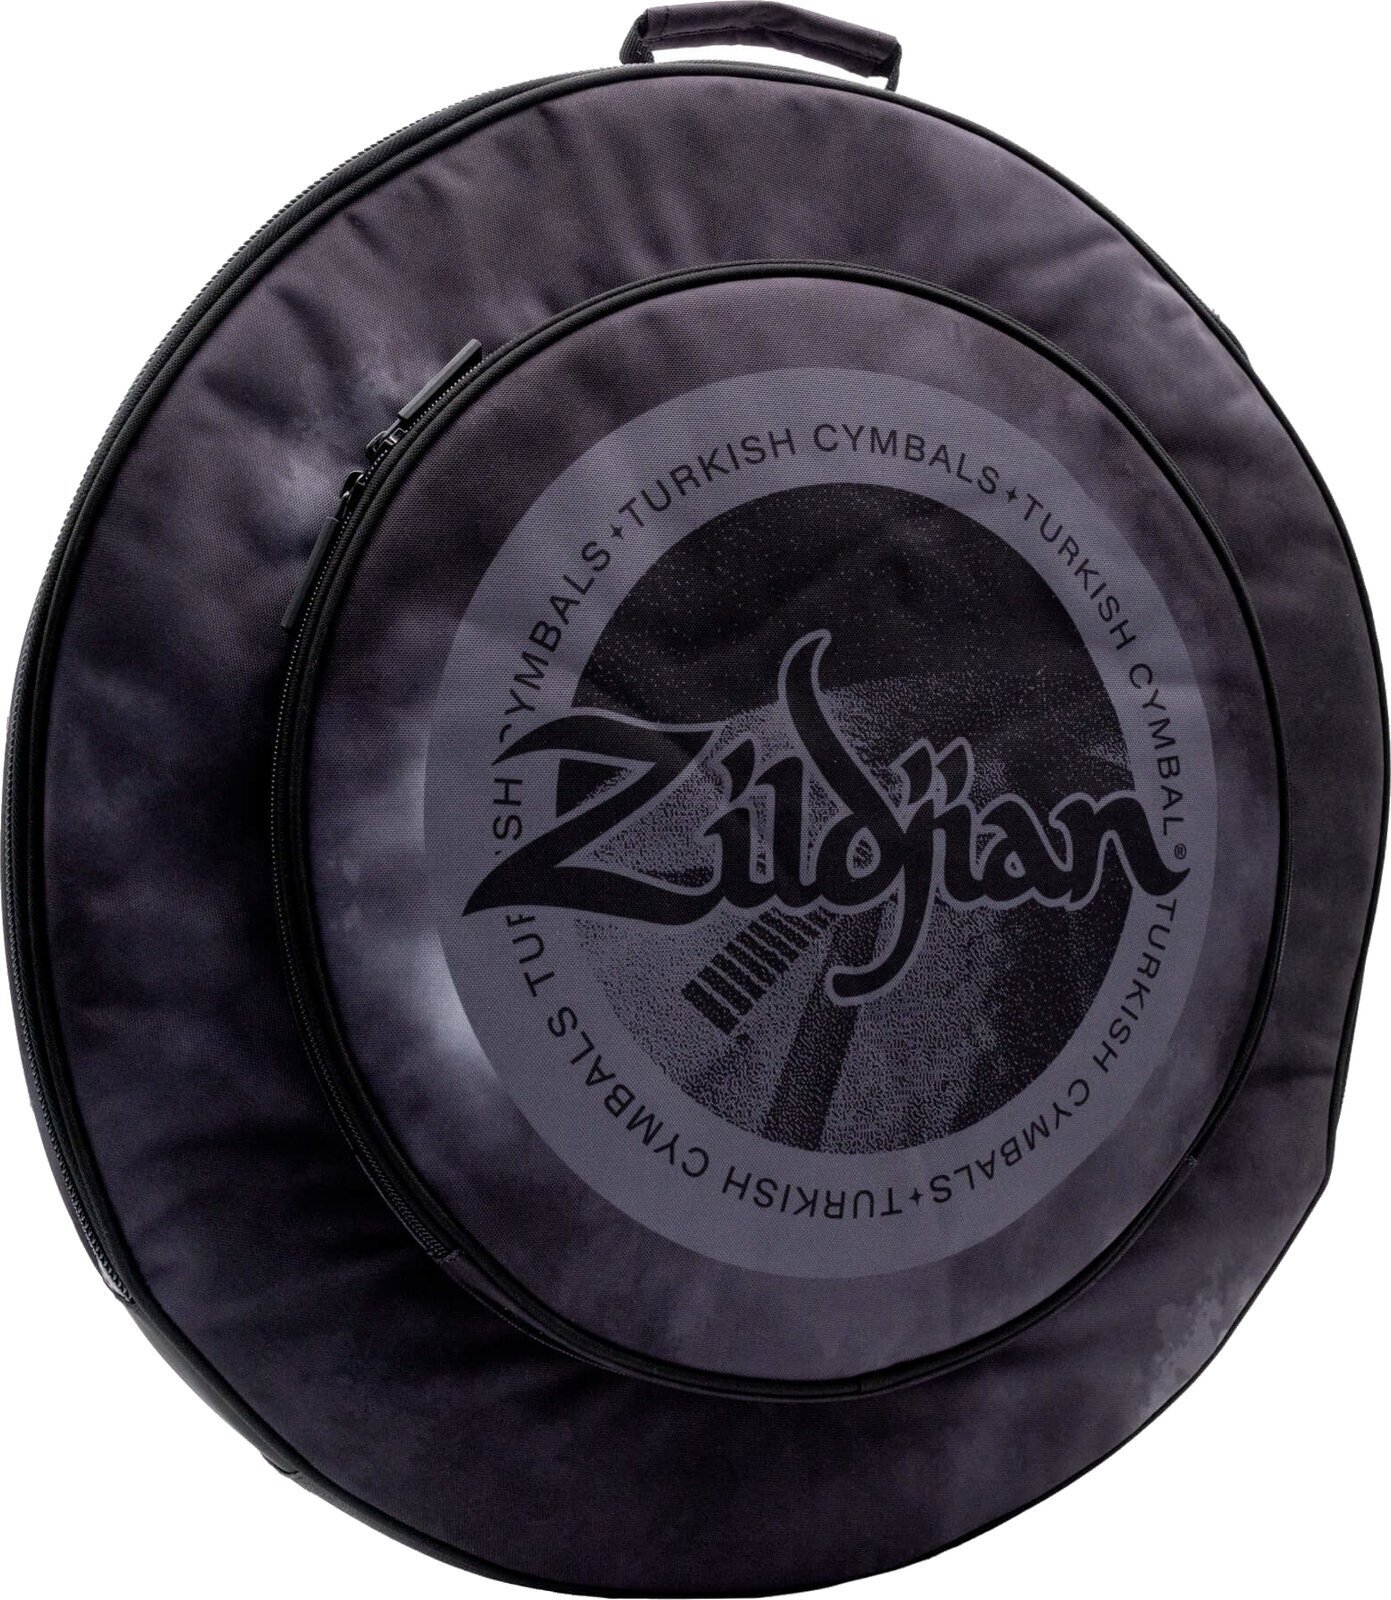 Beschermhoes voor bekkens Zildjian 20" Student Cymbal Bag Black Rain Cloud Beschermhoes voor bekkens